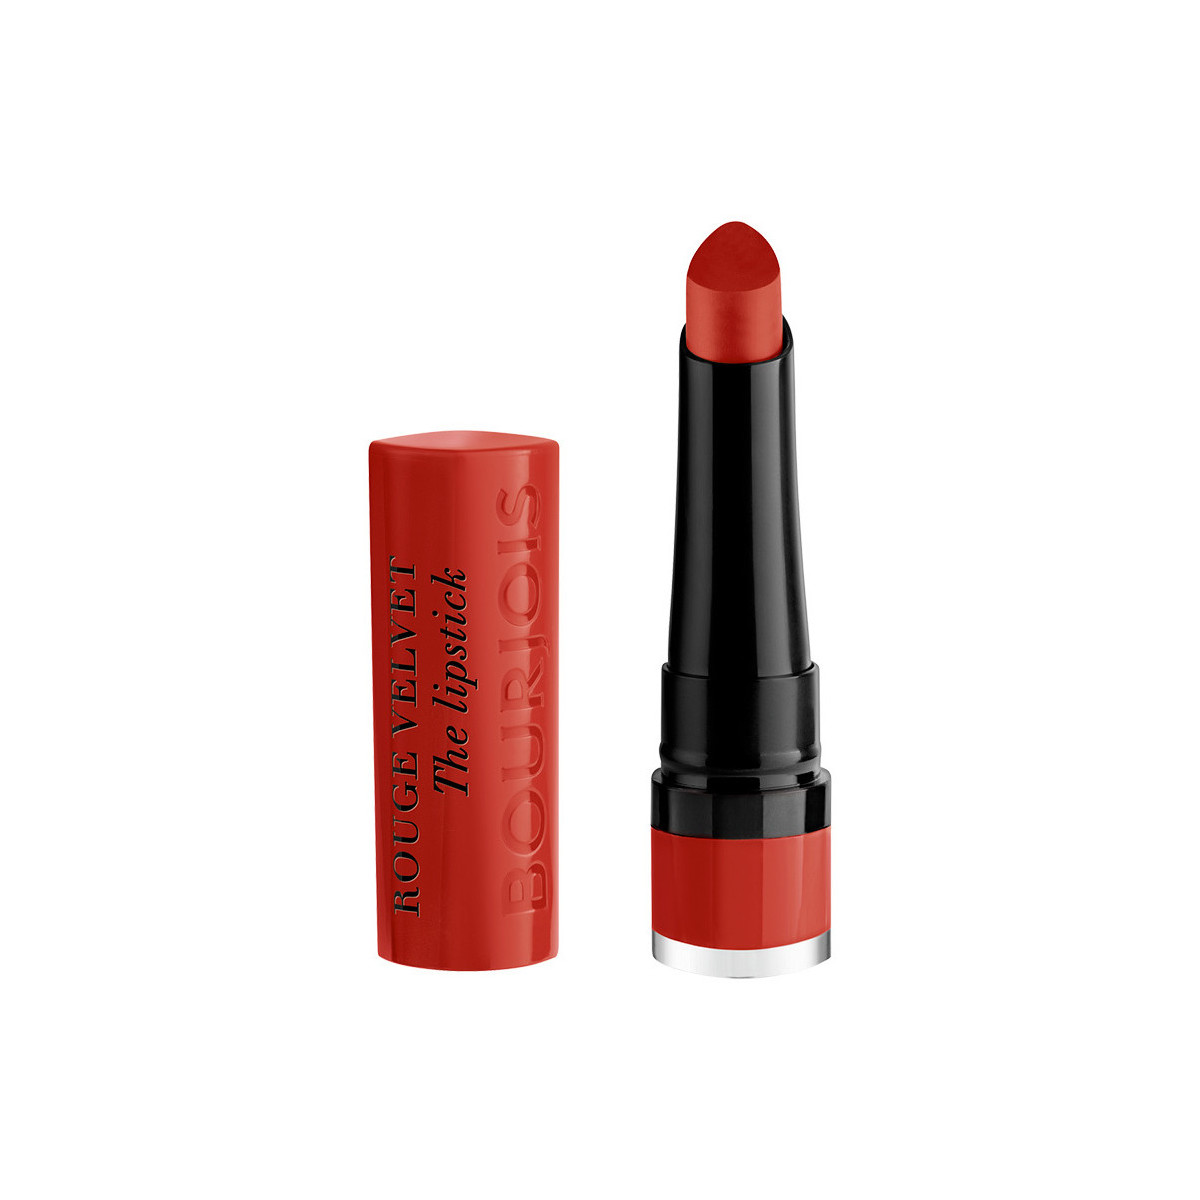 Beauté Femme Rouges à lèvres Bourjois Rouge Velvet The Lipstick 21-grande Roux 